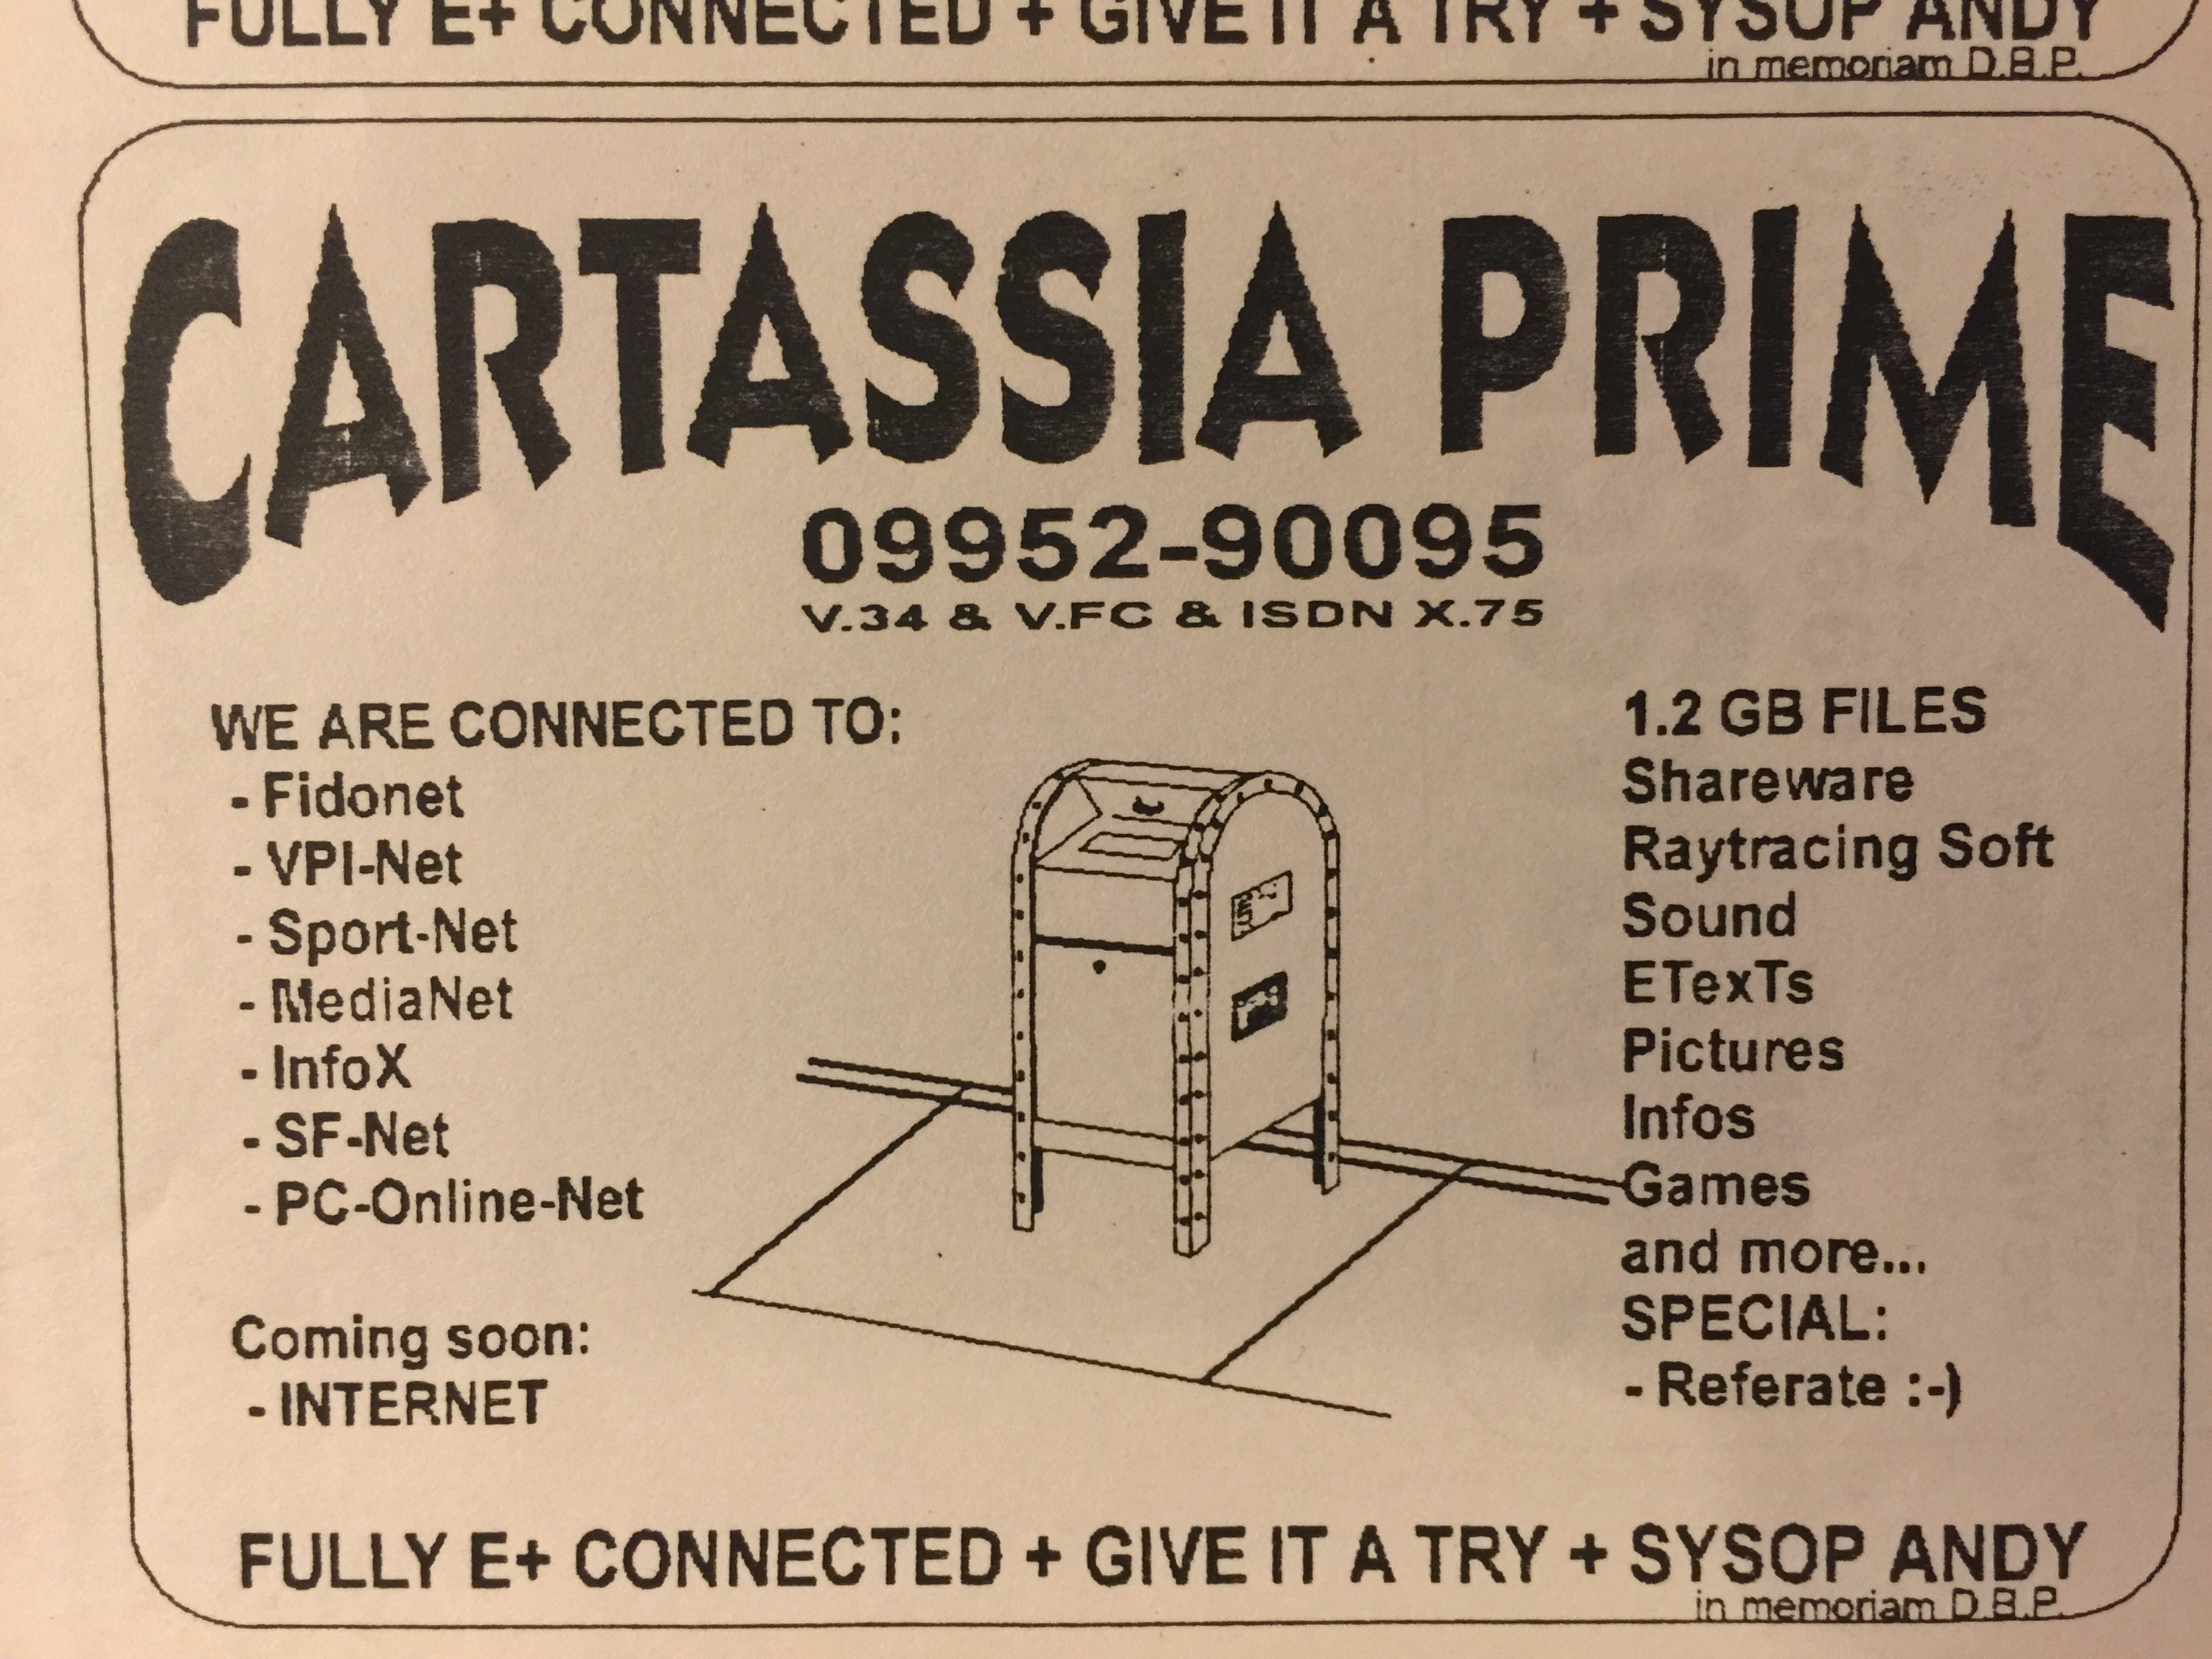 #BBS Ad for Mailbox "Cartassia Prime"